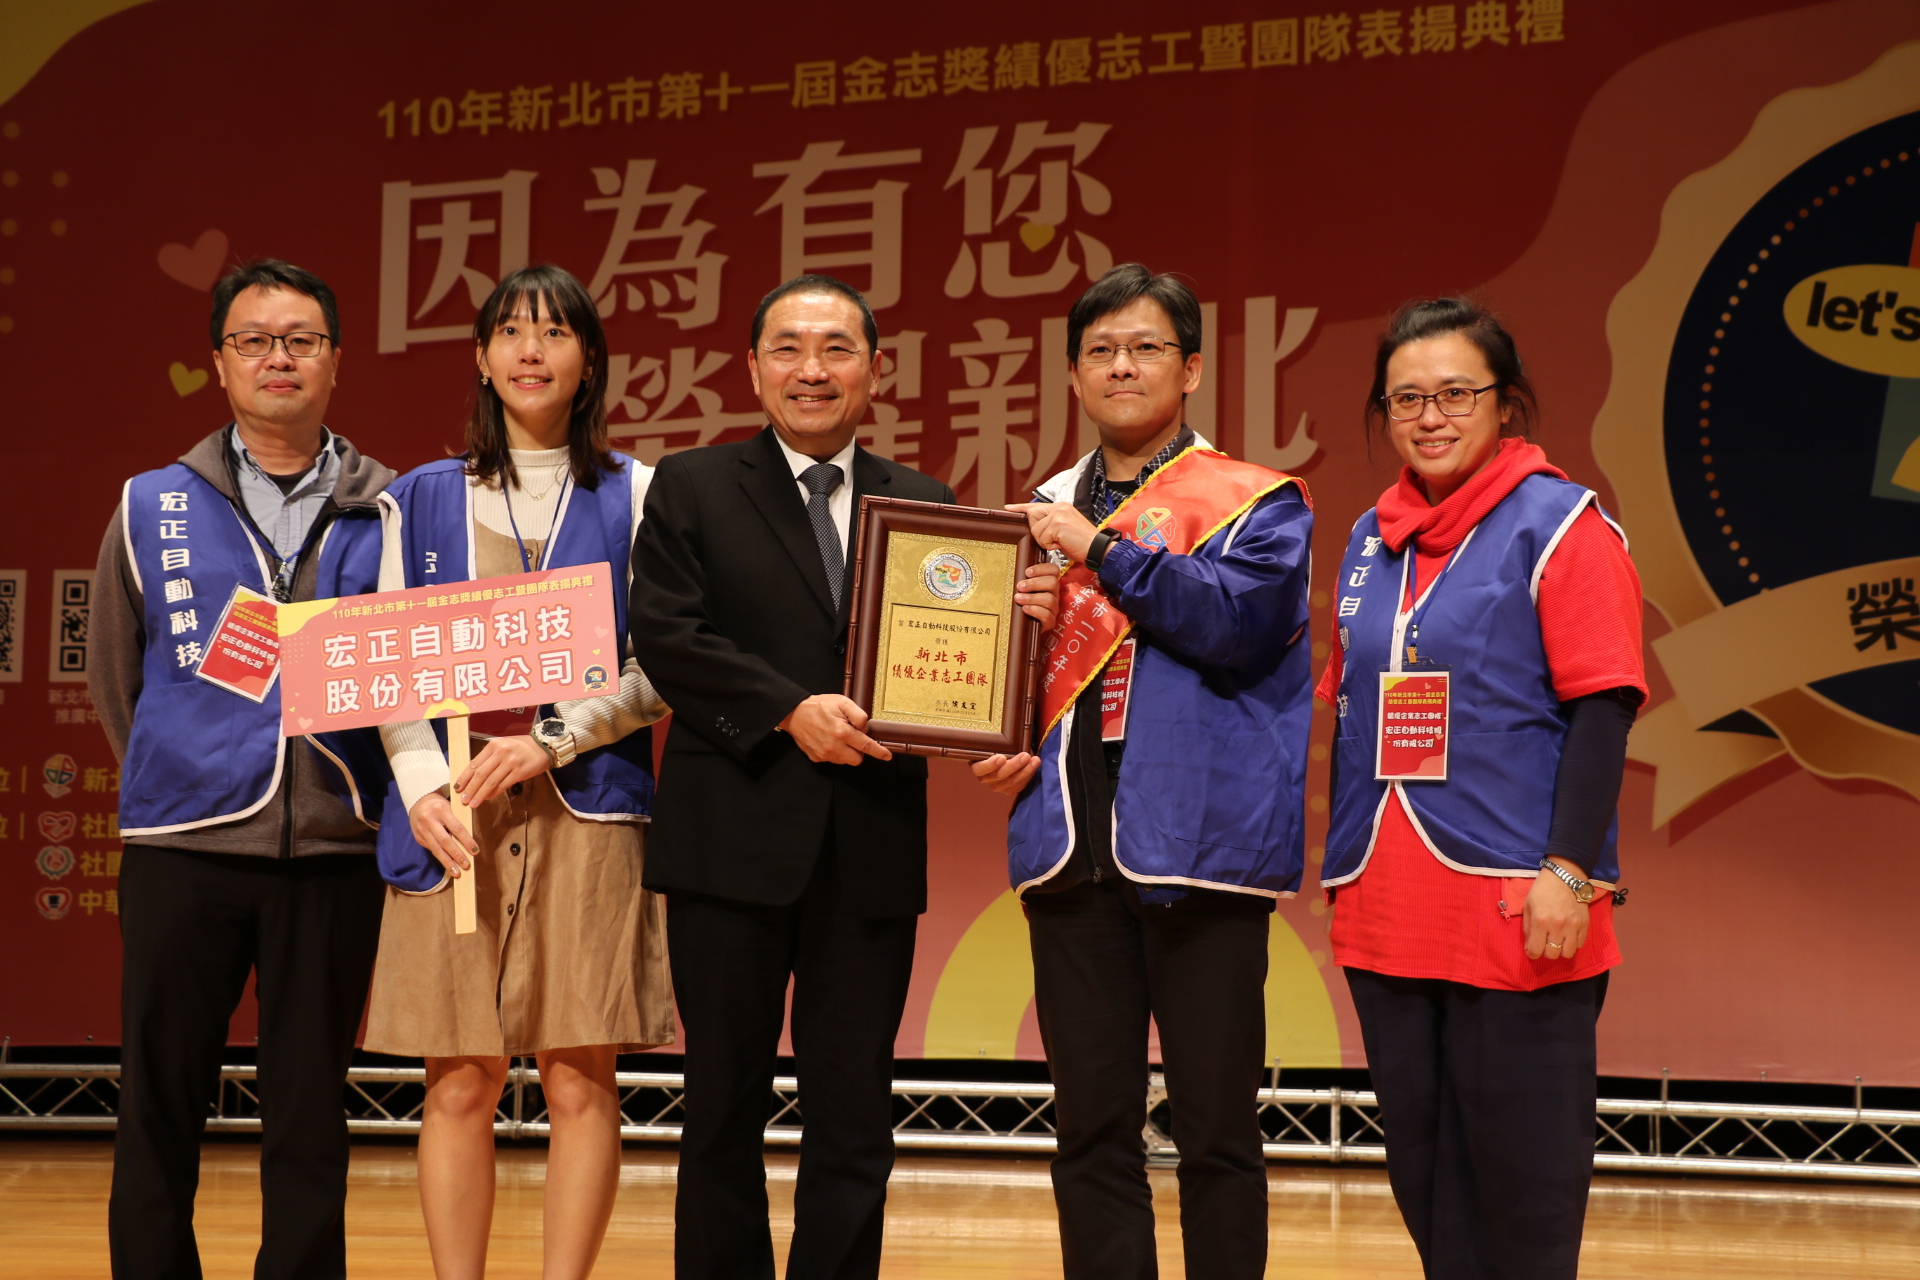 侯友宜頒獎表揚獲得績優企業志工團隊的宏正自動科技公司